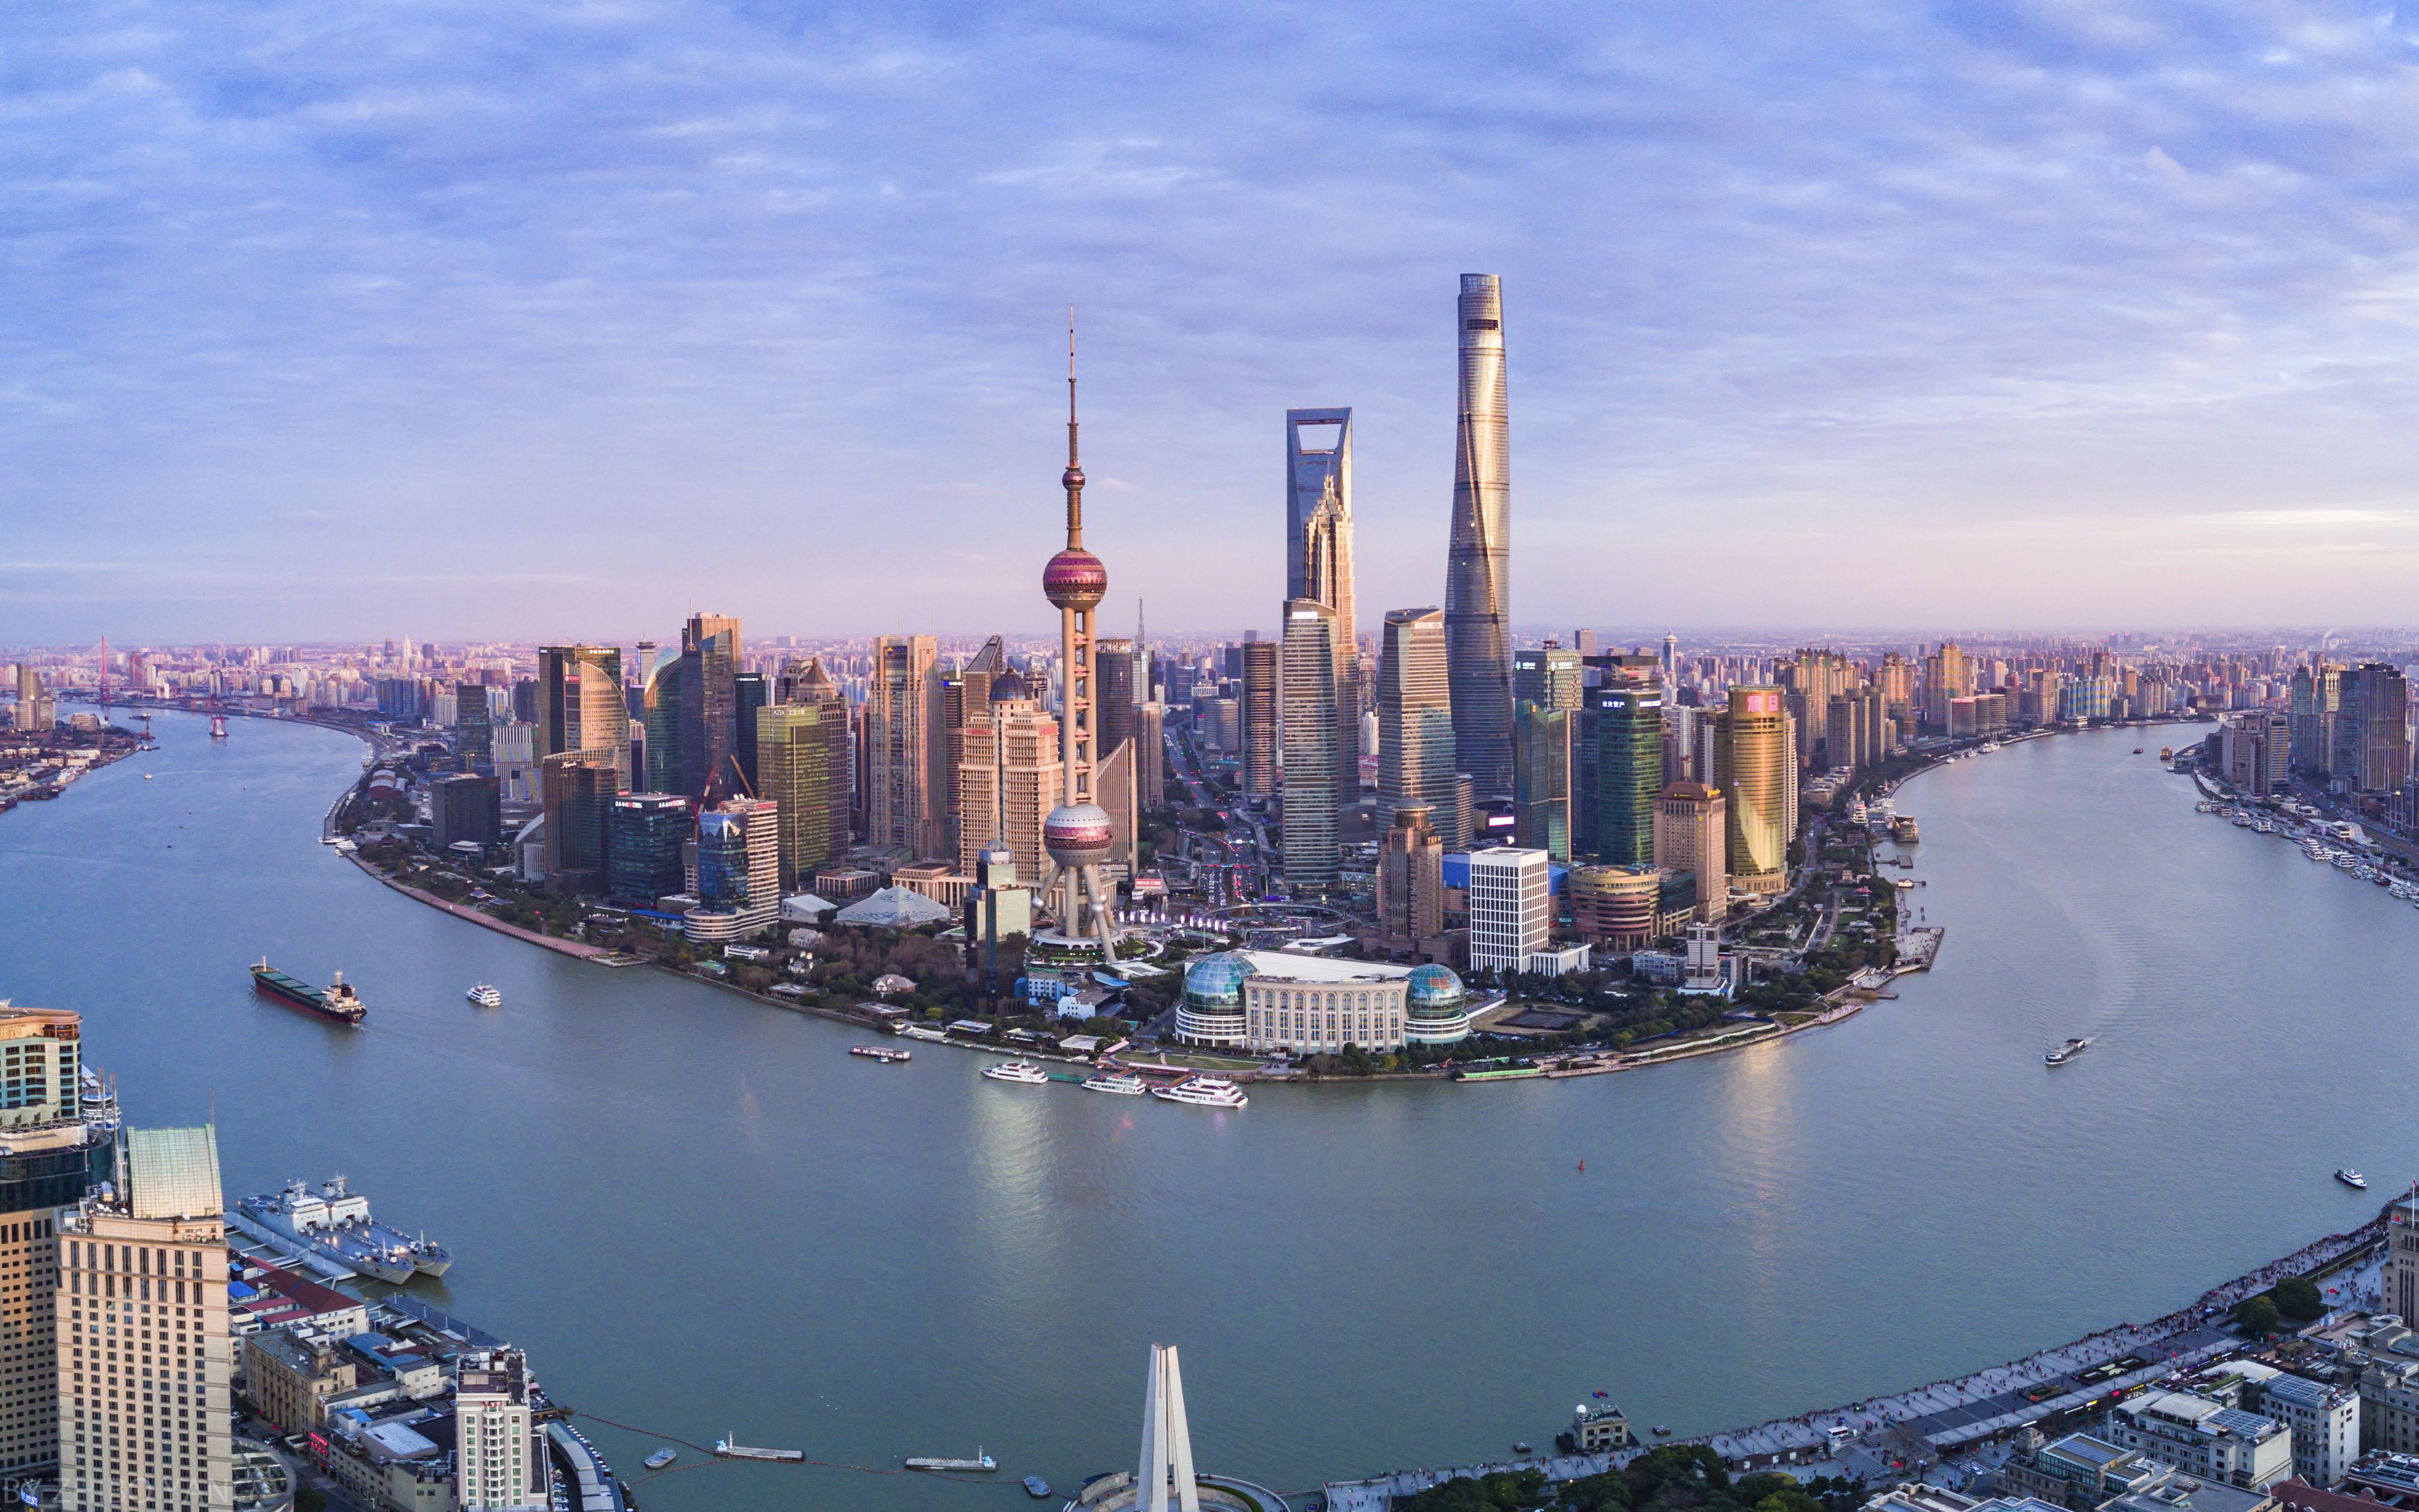 蓝天下的上海天际线 · 免费素材图片